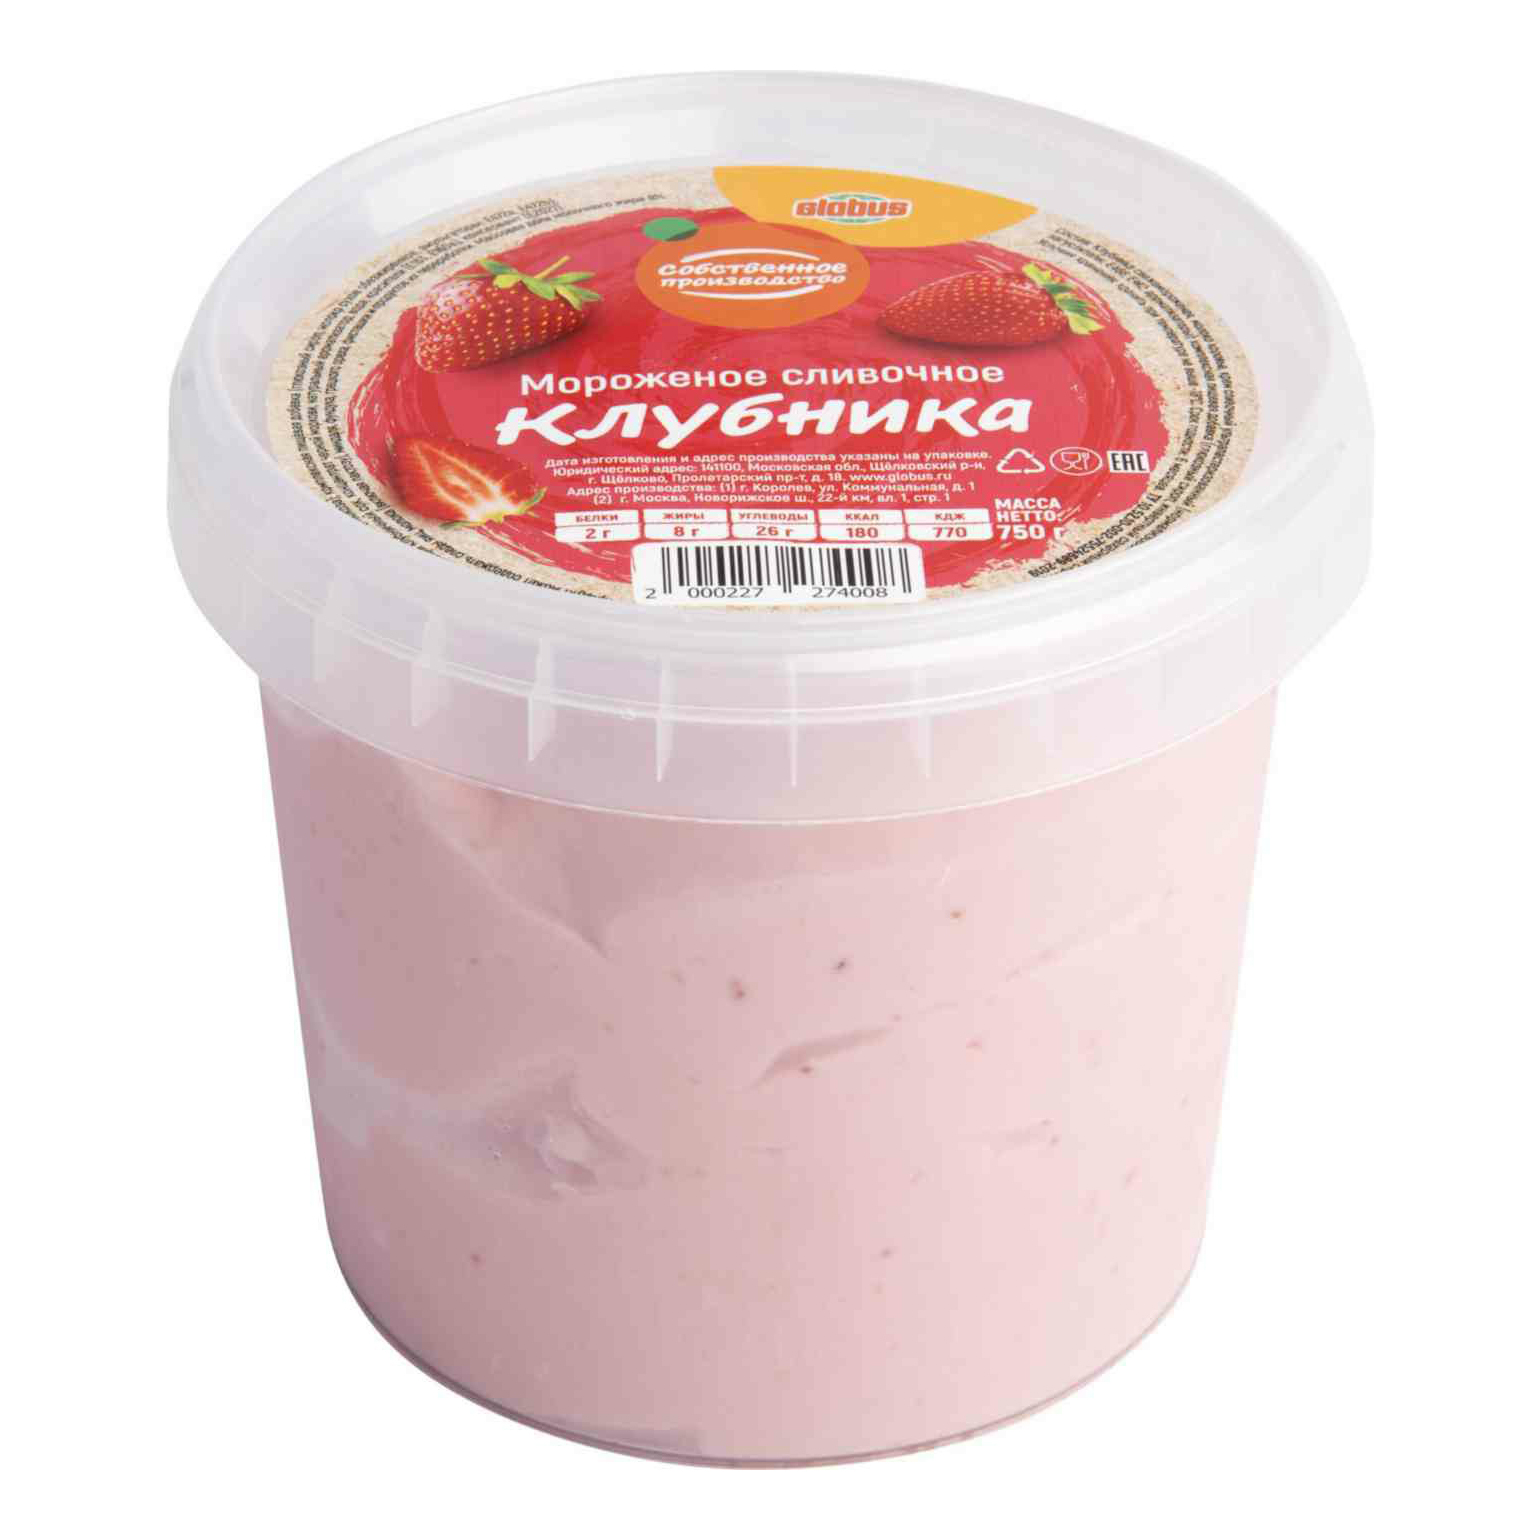 Мороженое сливочное Globus клубничное 750 г